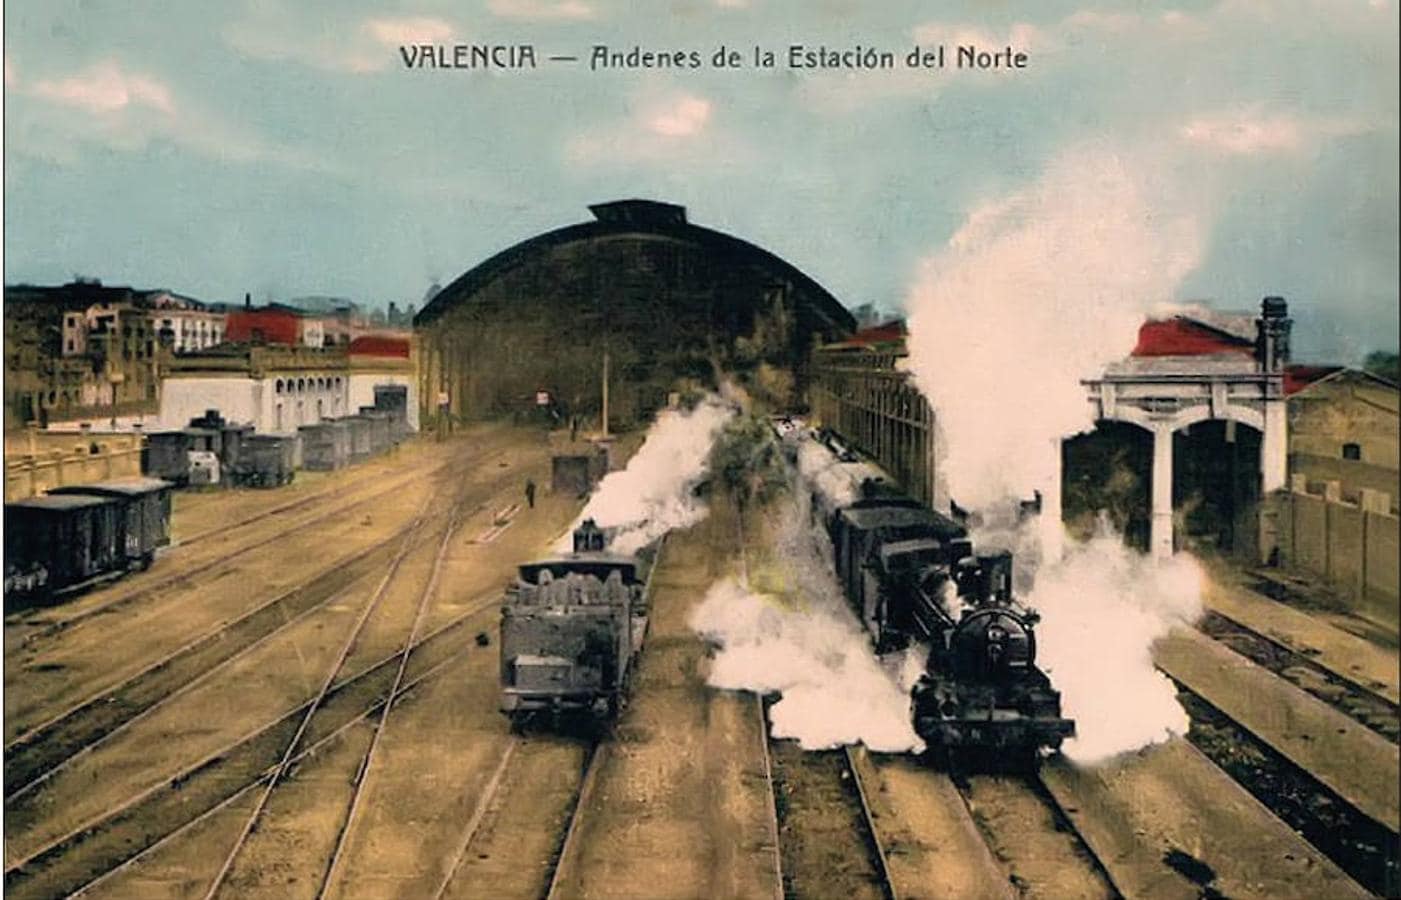 Postal coloreada. Circulación de trenes entre la zona interior y exterior de la estación.